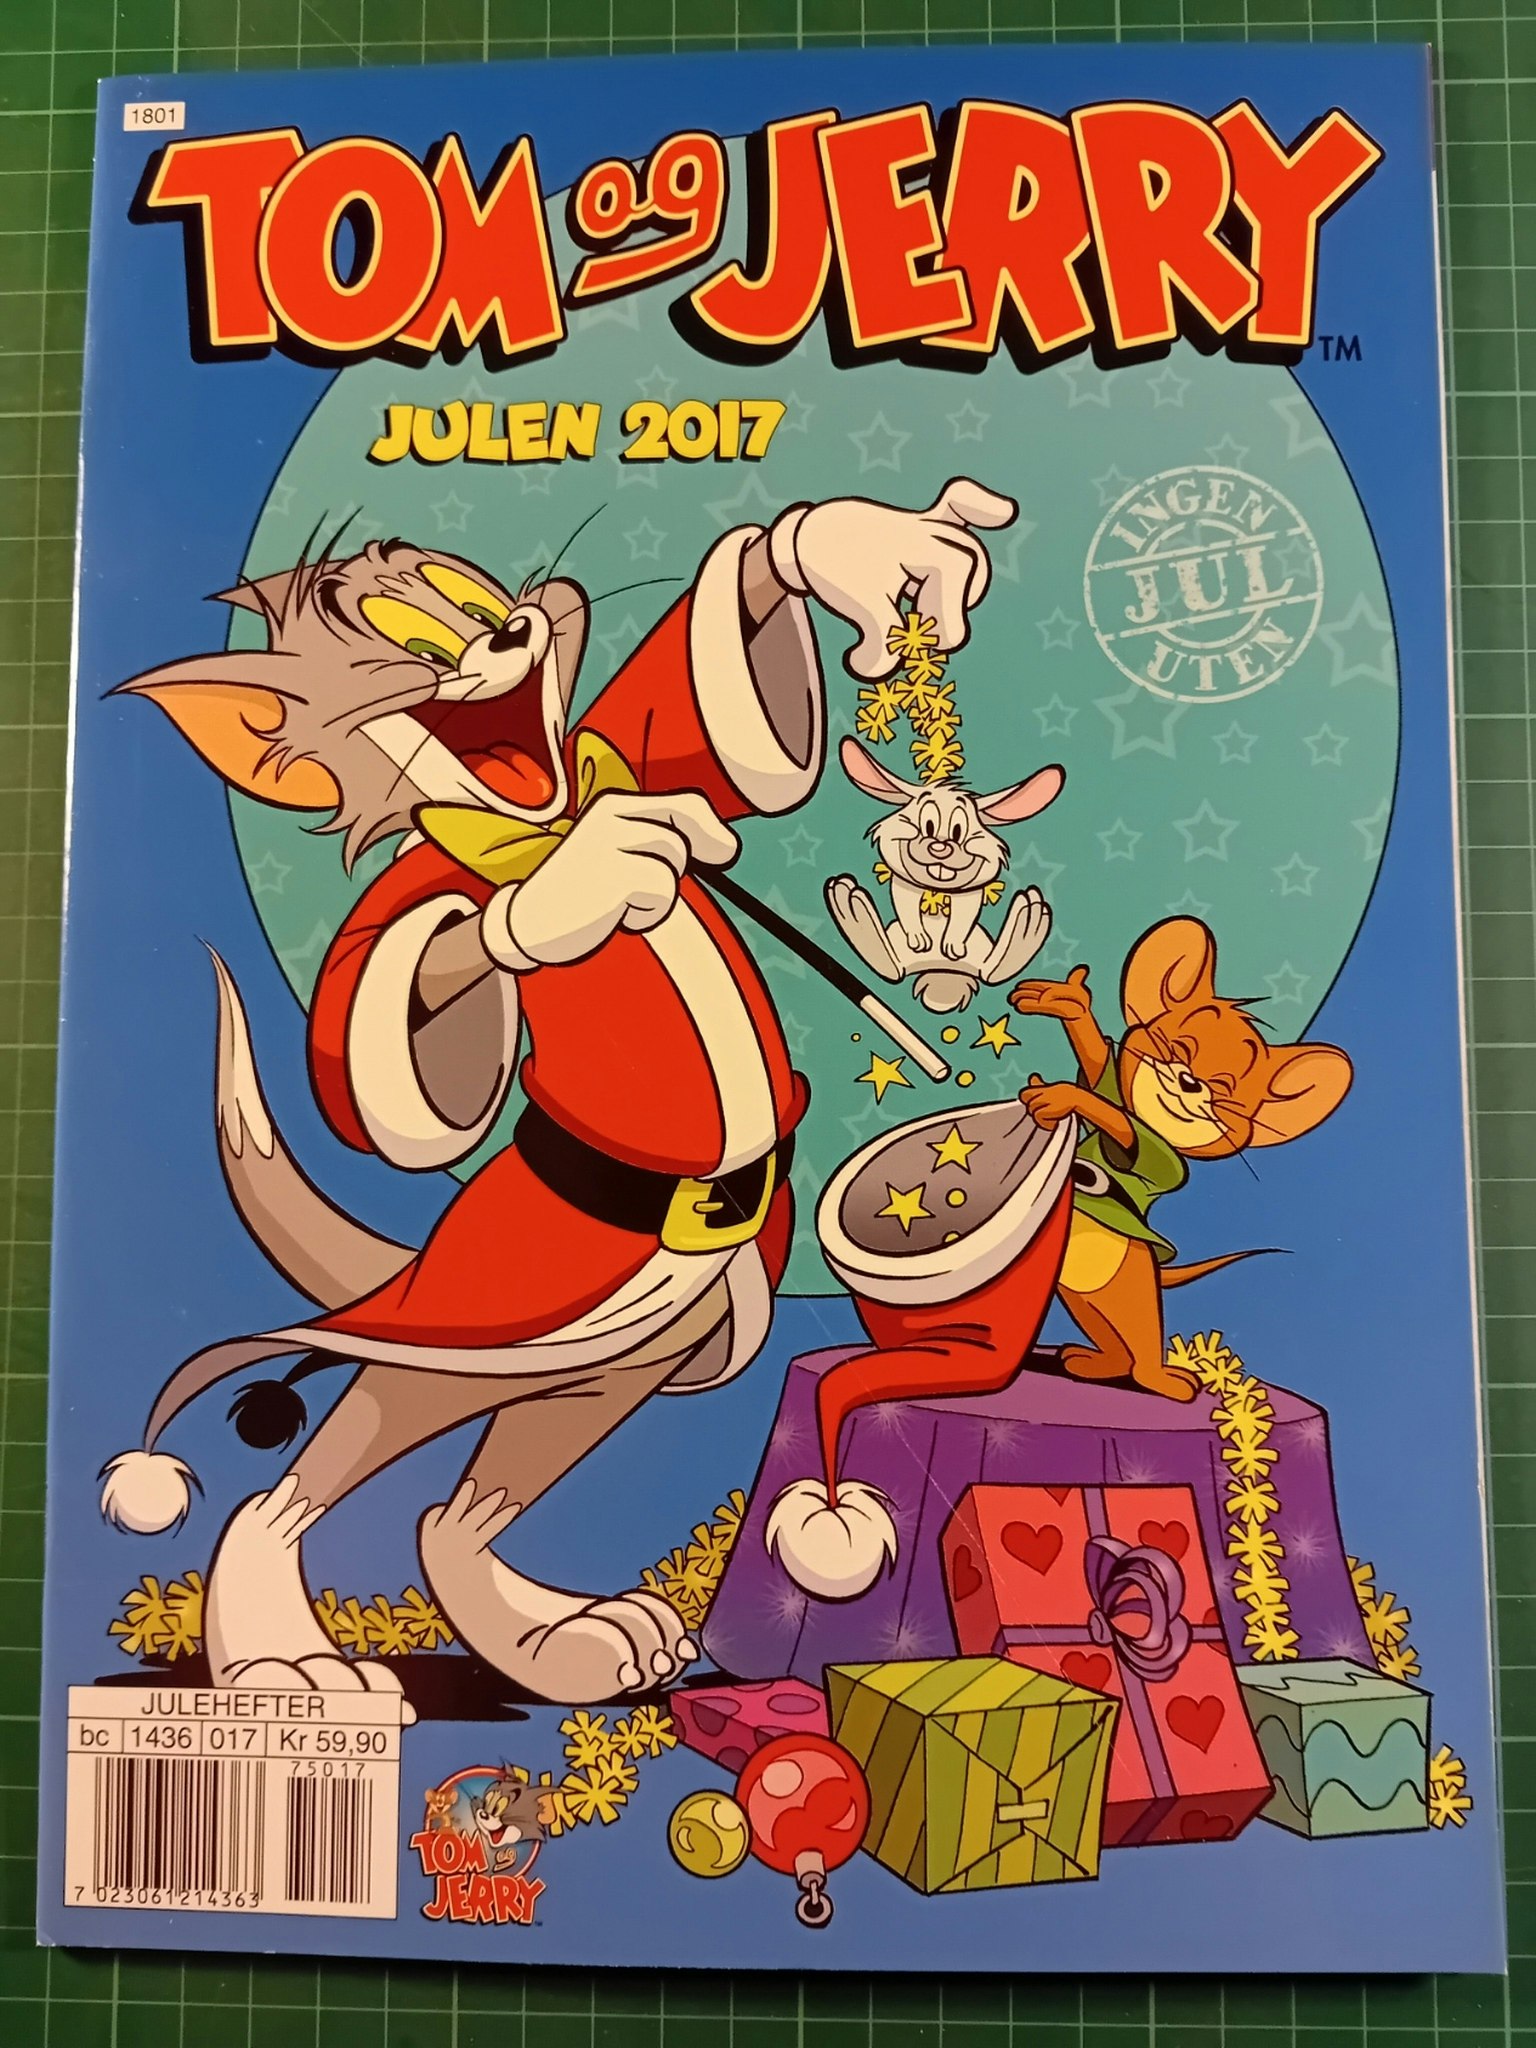 Tom & Jerry julen 2017